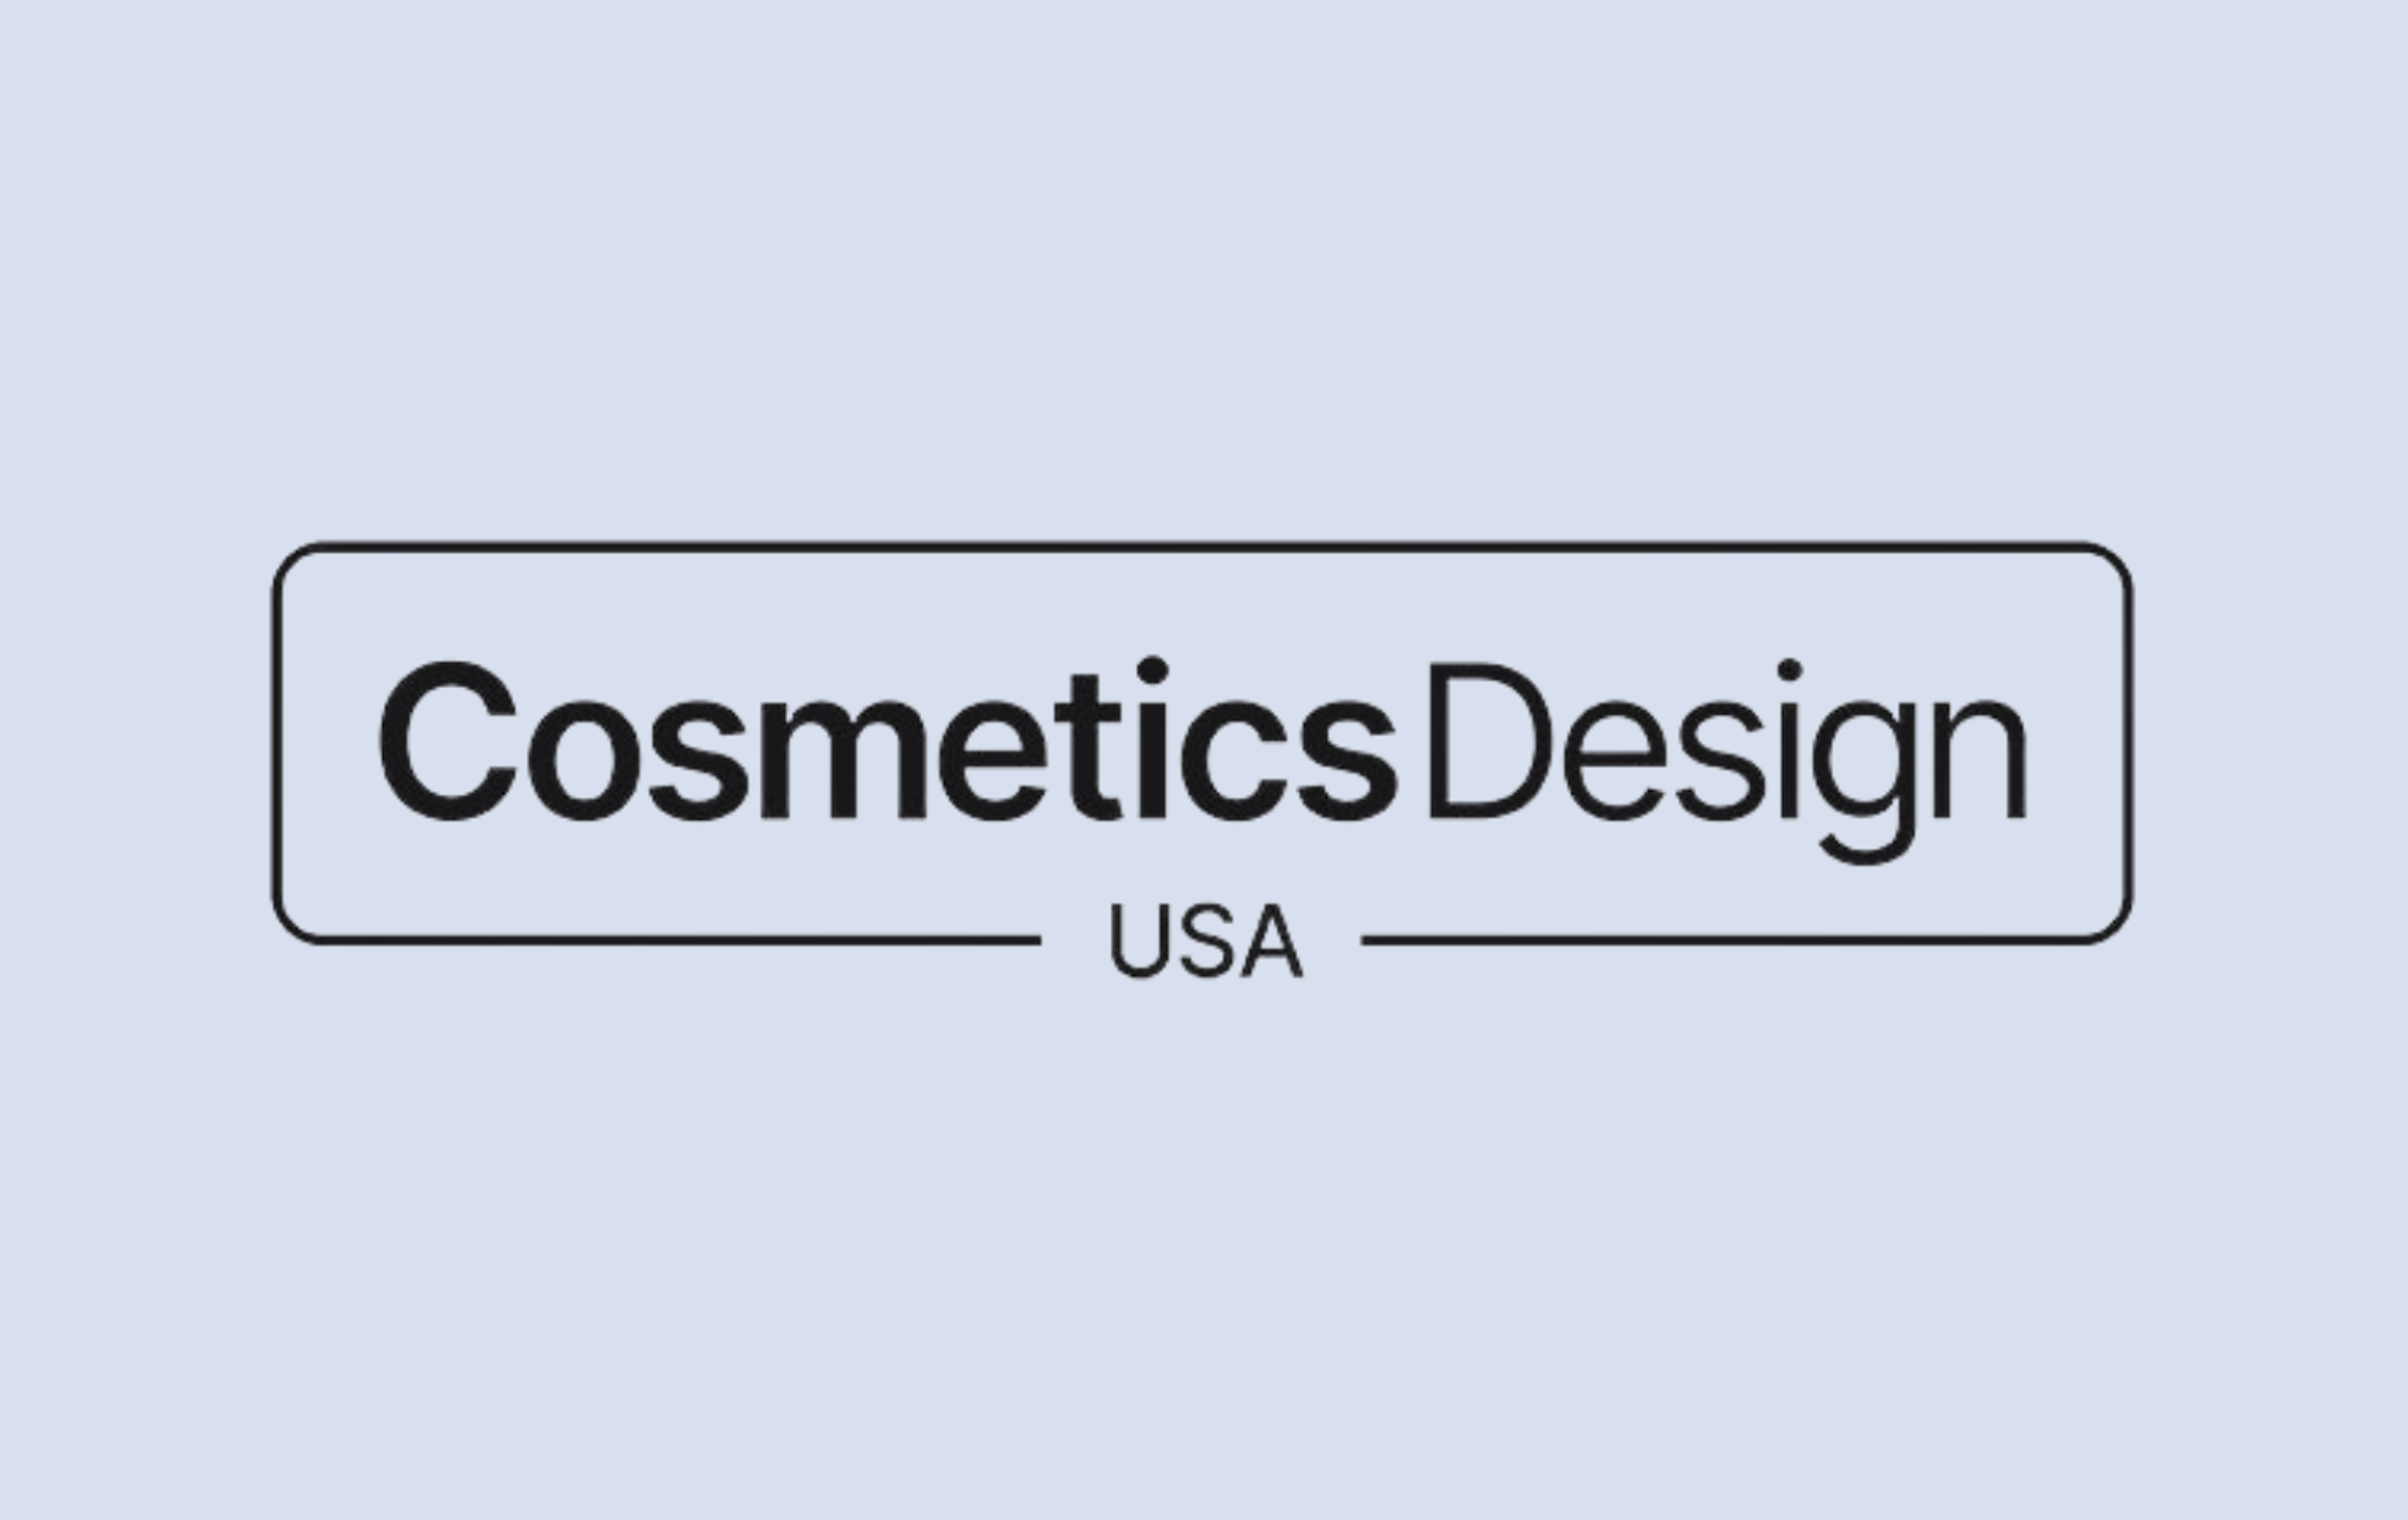 Cosmetics Design USA logo